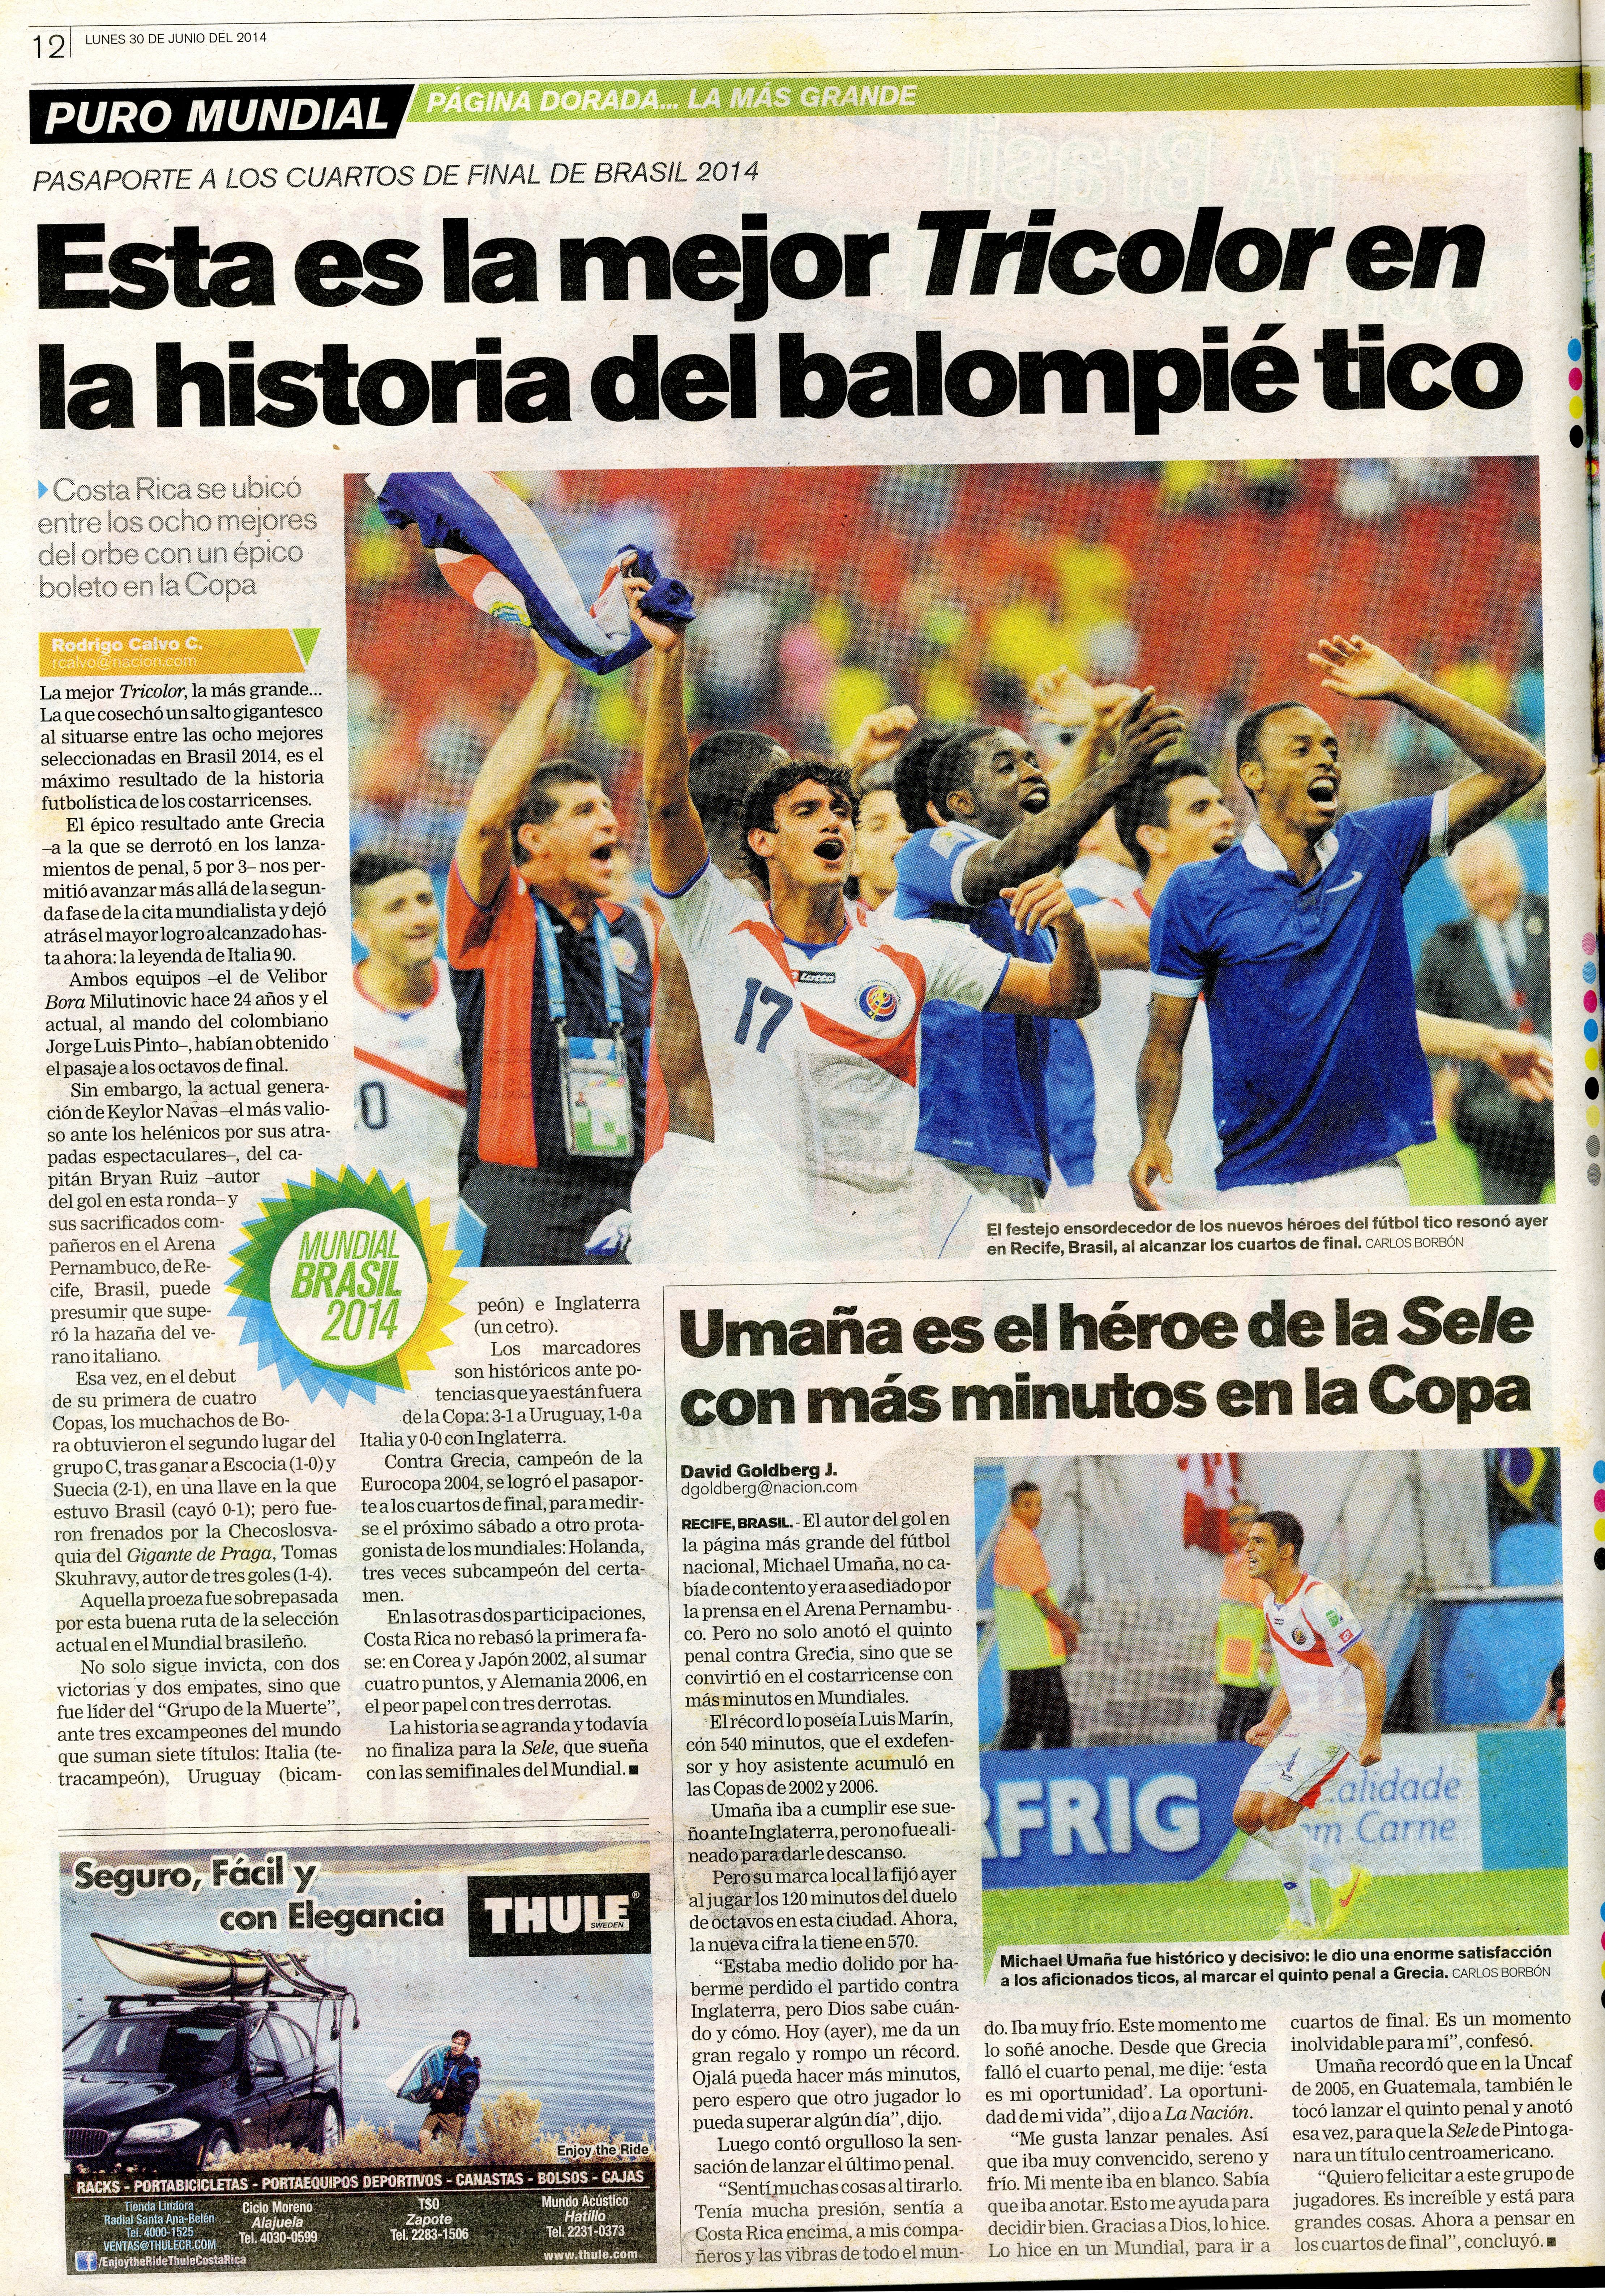 Costa Rica entró en el selecto grupo de las ocho mejores selecciones del Mundial de Brasil 2014.